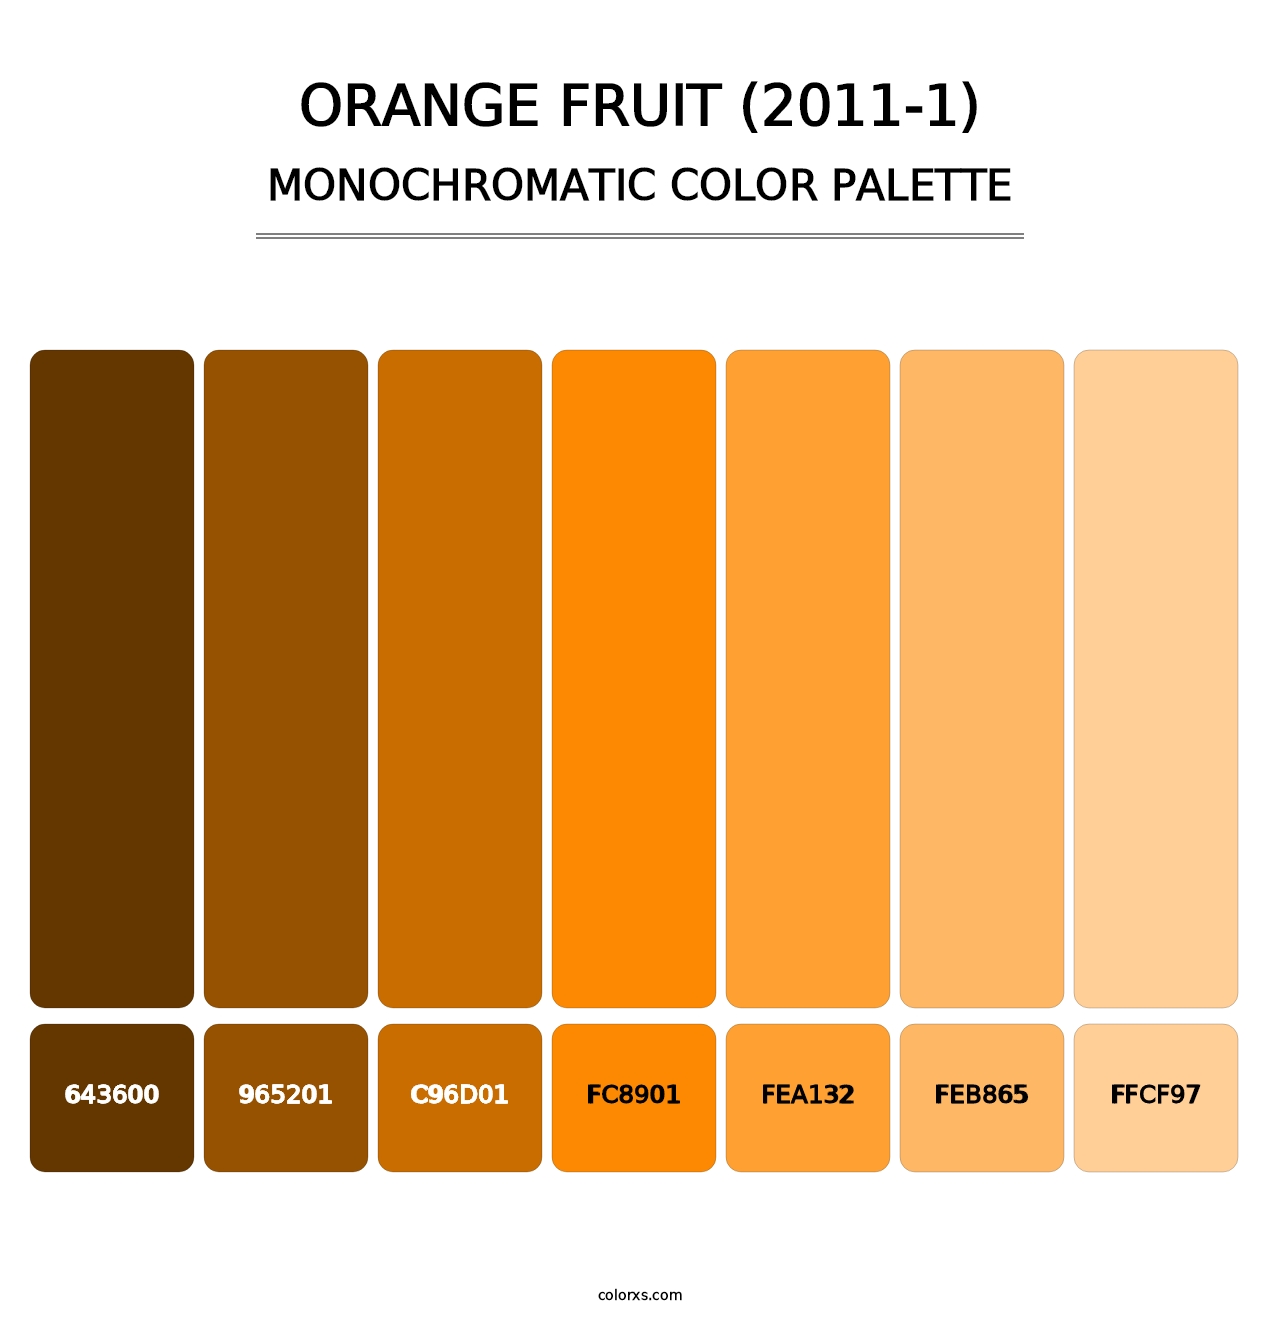 Orange Fruit (2011-1) - Monochromatic Color Palette